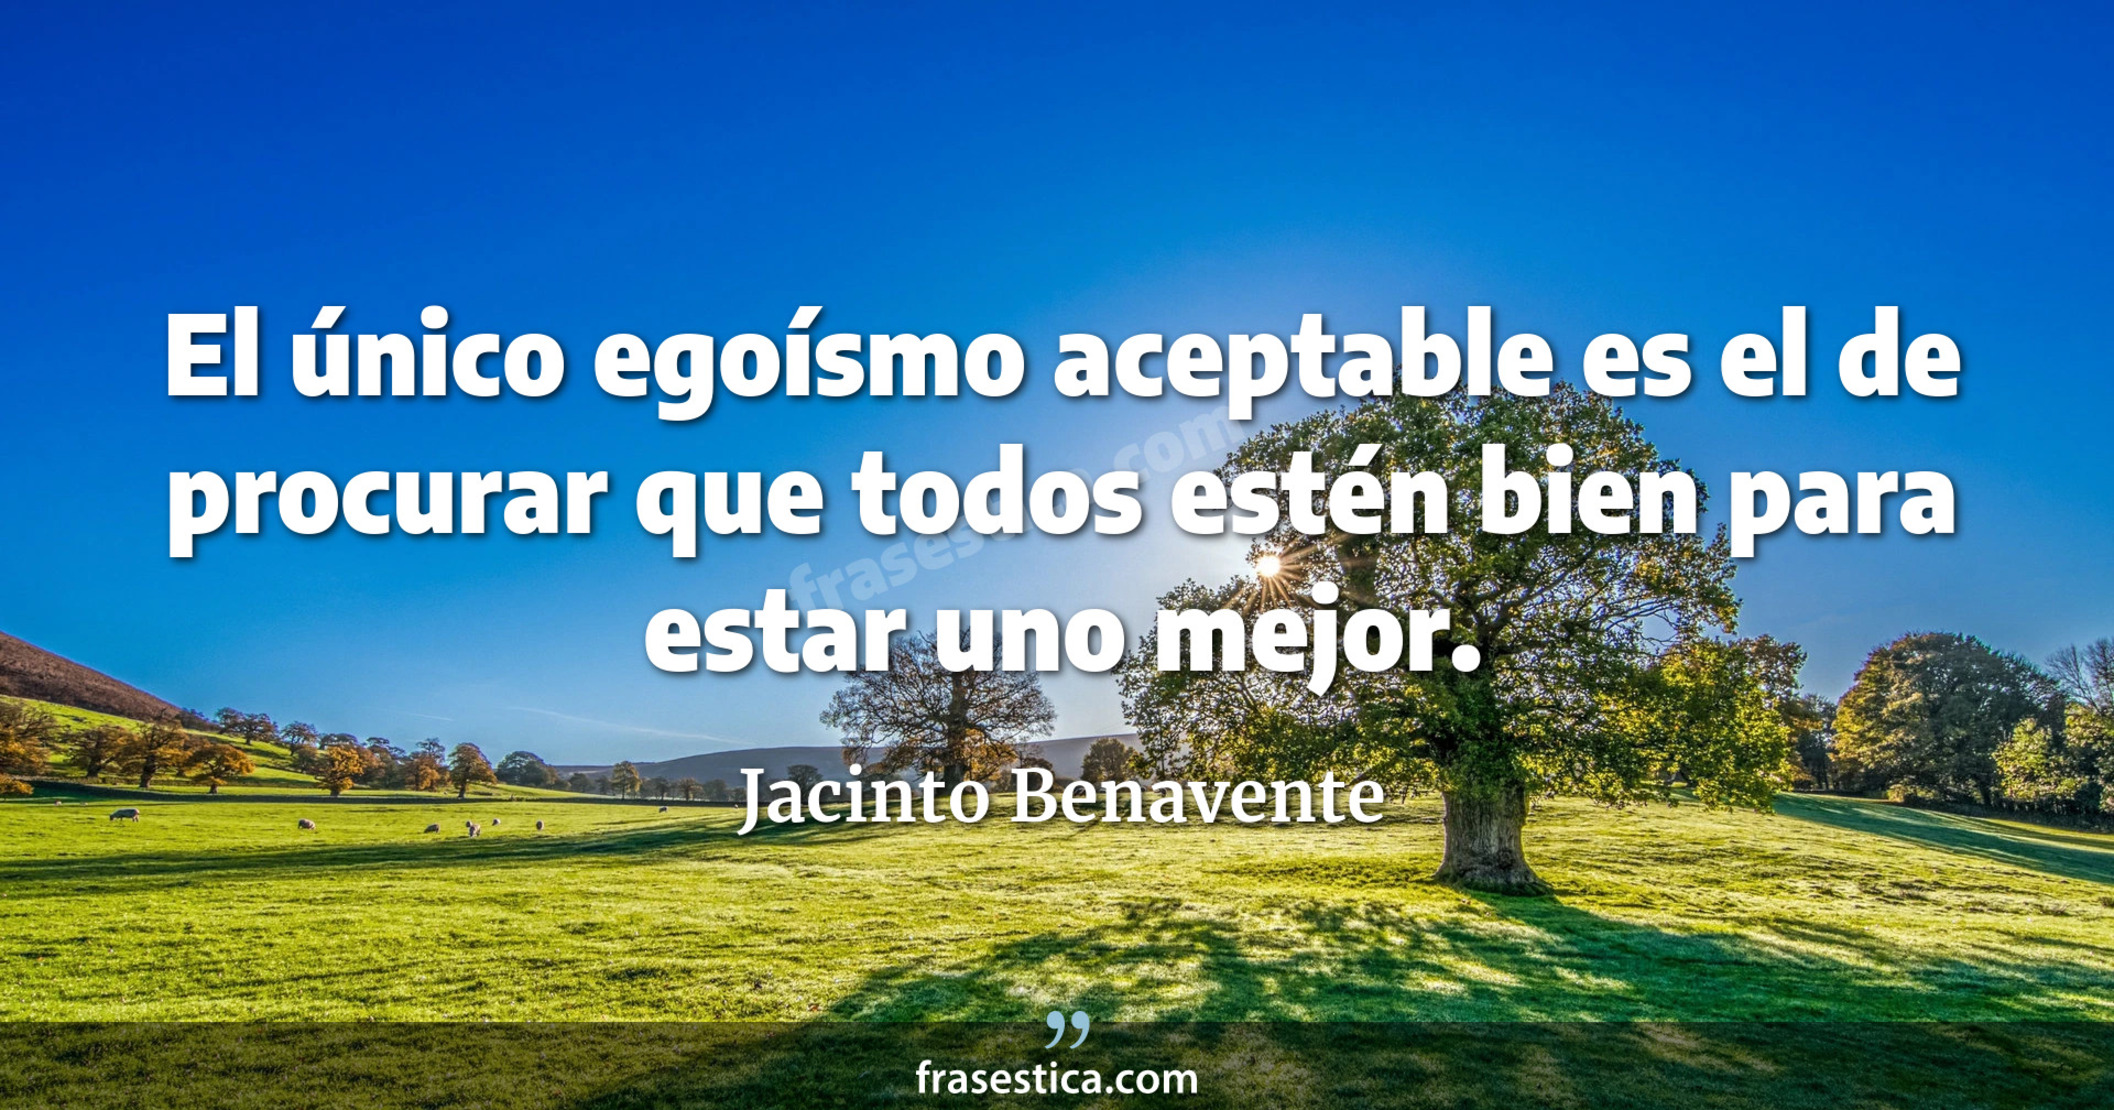 El único egoísmo aceptable es el de procurar que todos estén bien para estar uno mejor. - Jacinto Benavente